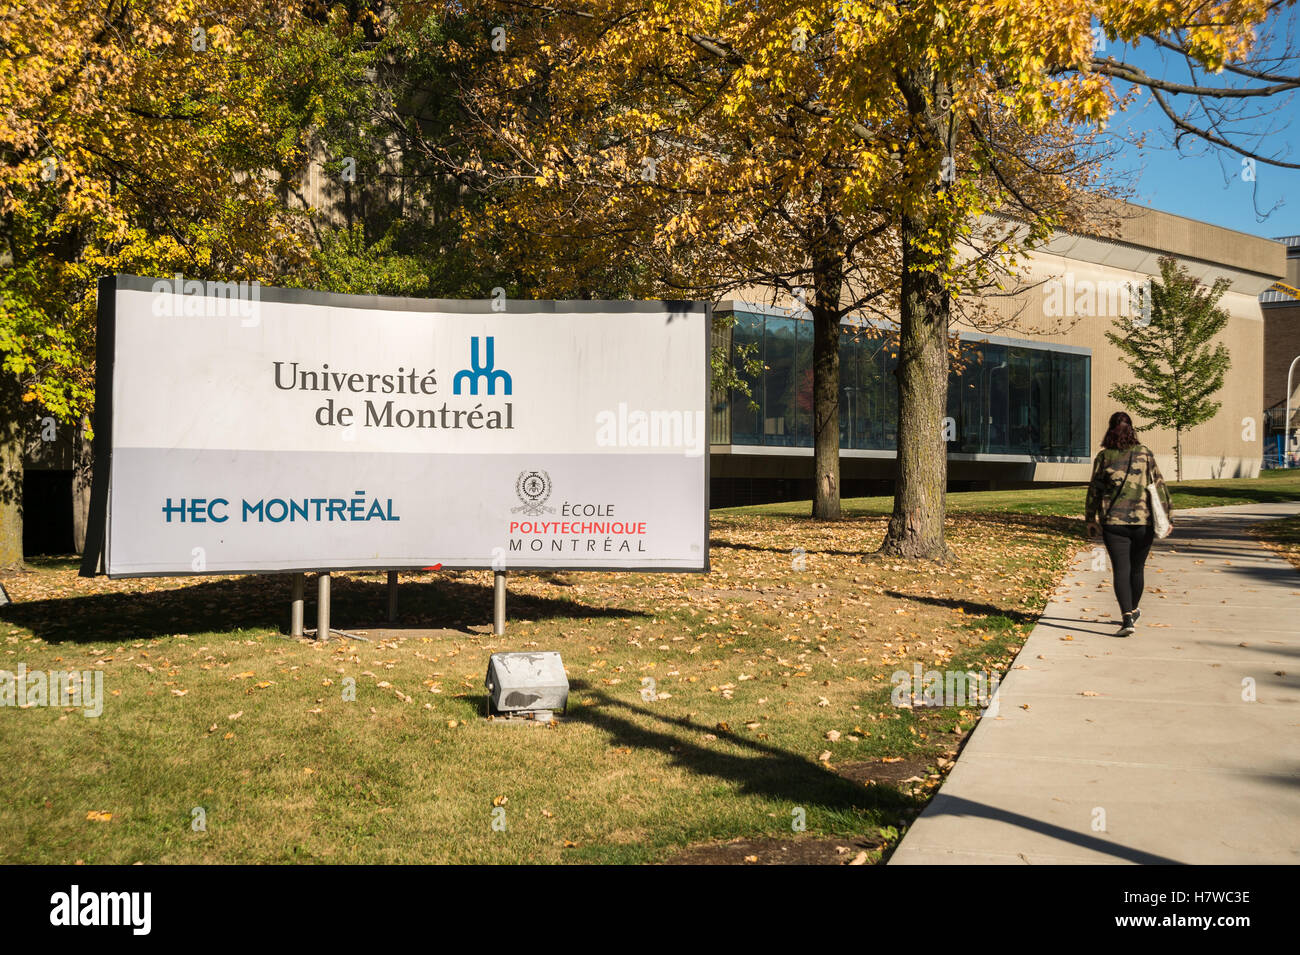 HEC Montreal (Ecole des Hautes Etudes Commerciales de Montreal) business and management school Stock Photo